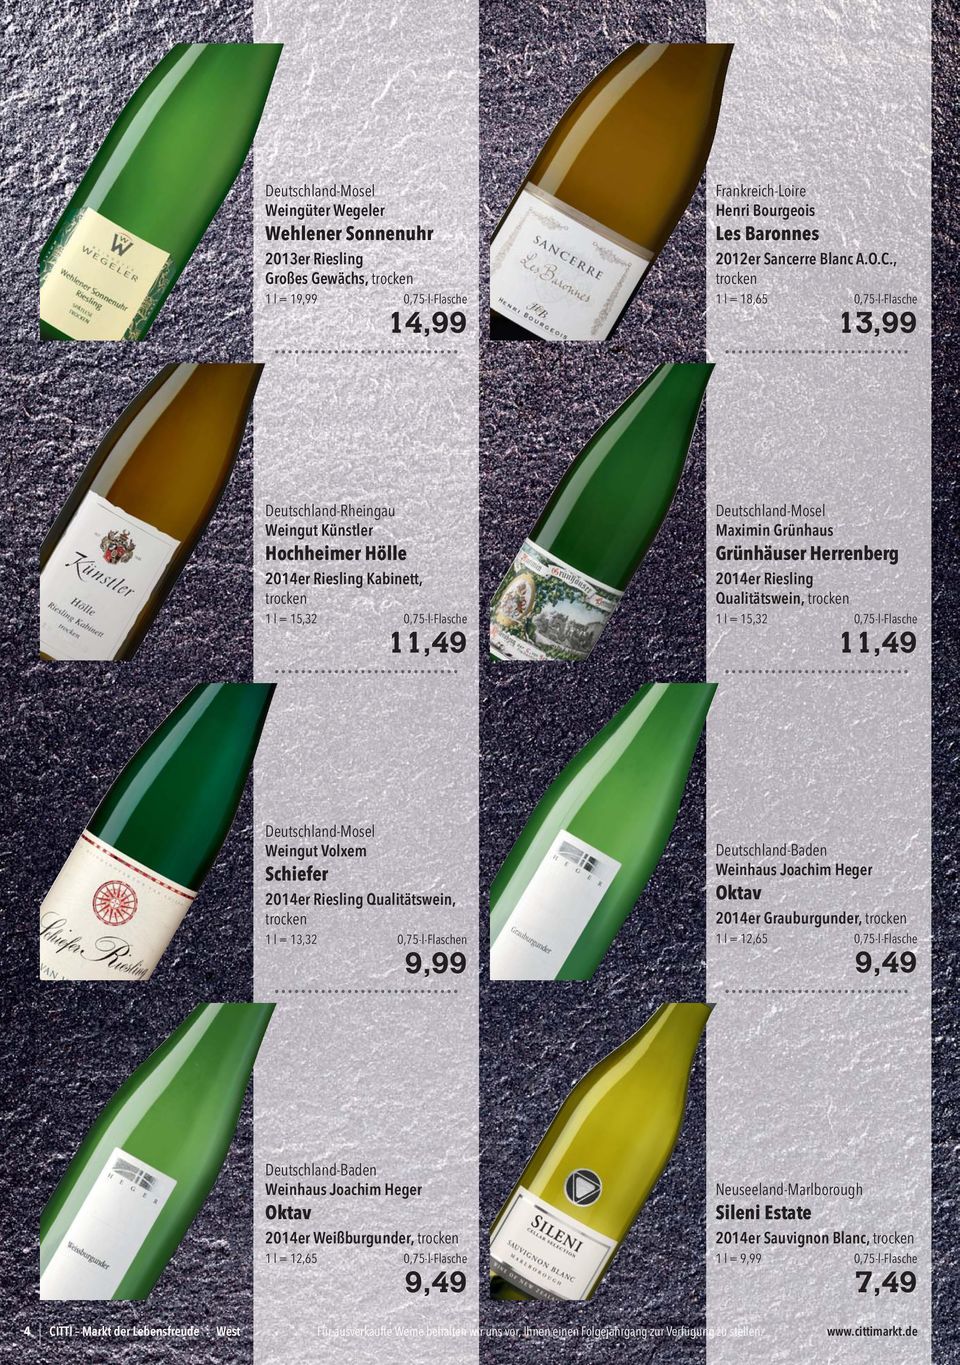 Herrenberg 2014er Riesling Qualitätswein, 1 l = 15,32 0,75-l-Flasche 11,49 Deutschland-Mosel Weingut Volxem Schiefer 2014er Riesling Qualitätswein, 1 l = 13,32 0,75-l-Flaschen 9,99 Deutschland-Baden